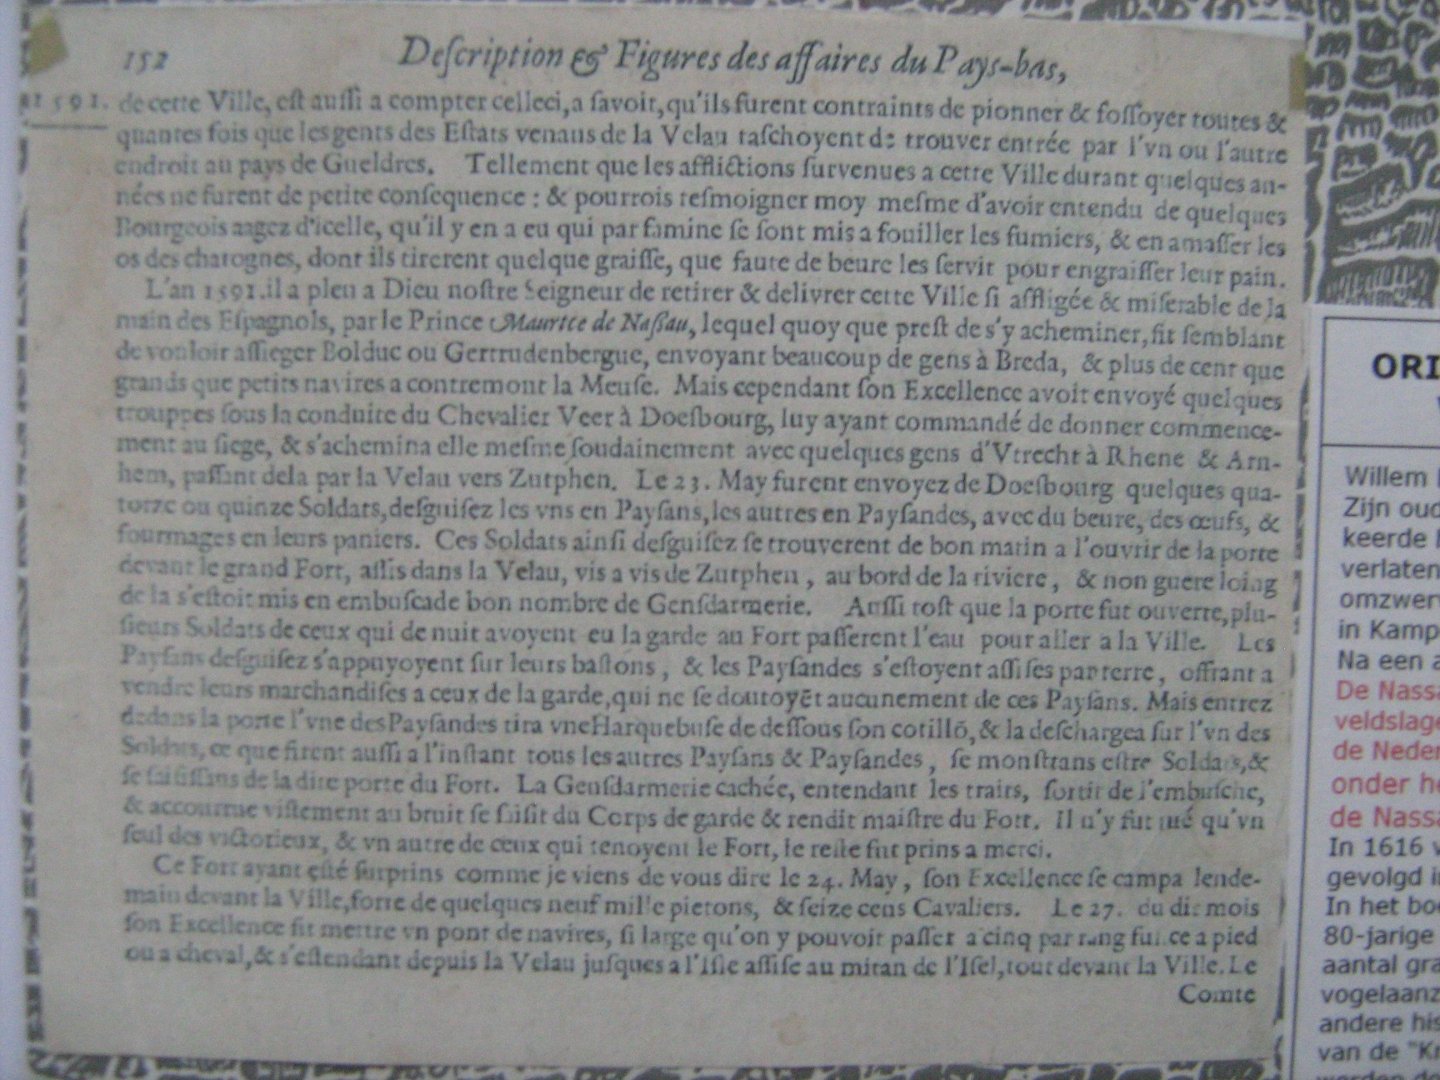  - DEVENTER - Gravure over krijgstoneel 1591 - 1616